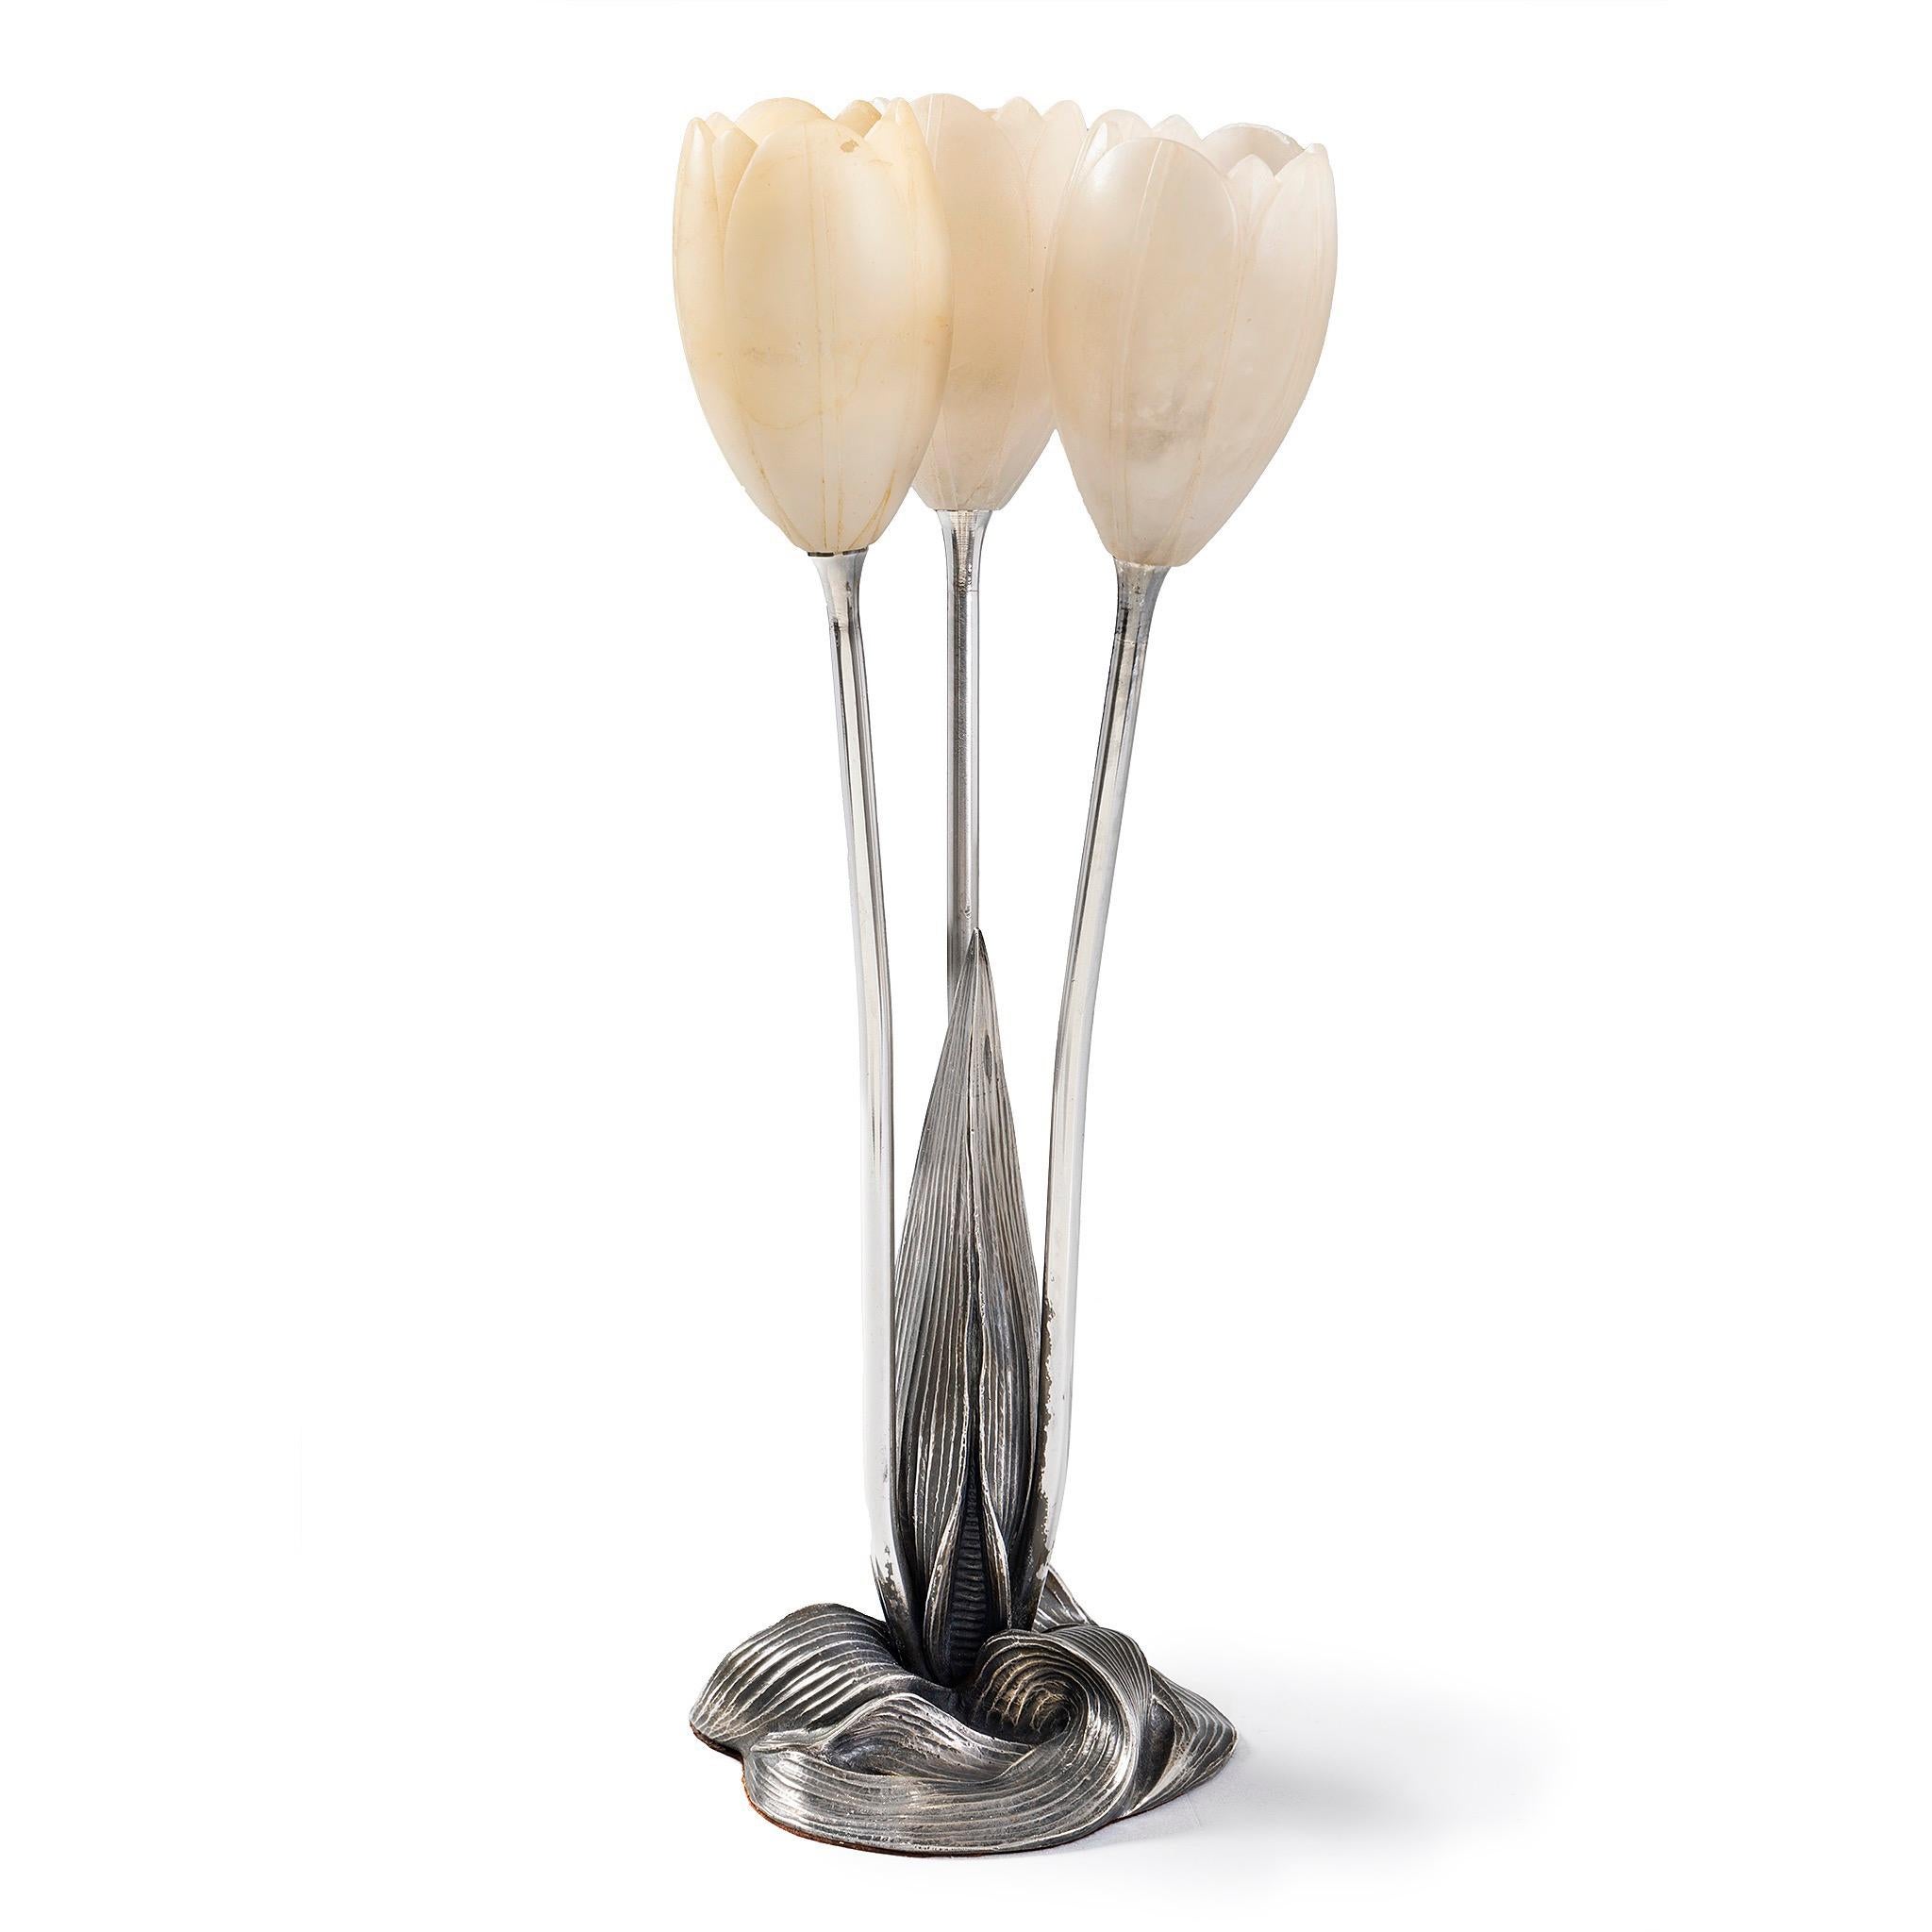 Die innovative Struktur der Leuchte von Albert Cheuret spiegelt eine Gruppe von drei weißen Tulpen wider, die aus einem Erdhügel aufsteigen. Cheuret gestaltete seine Lampe als Trio von Tulpenblüten mit kunstvoll geschnitzten Alabasterblütenköpfen.